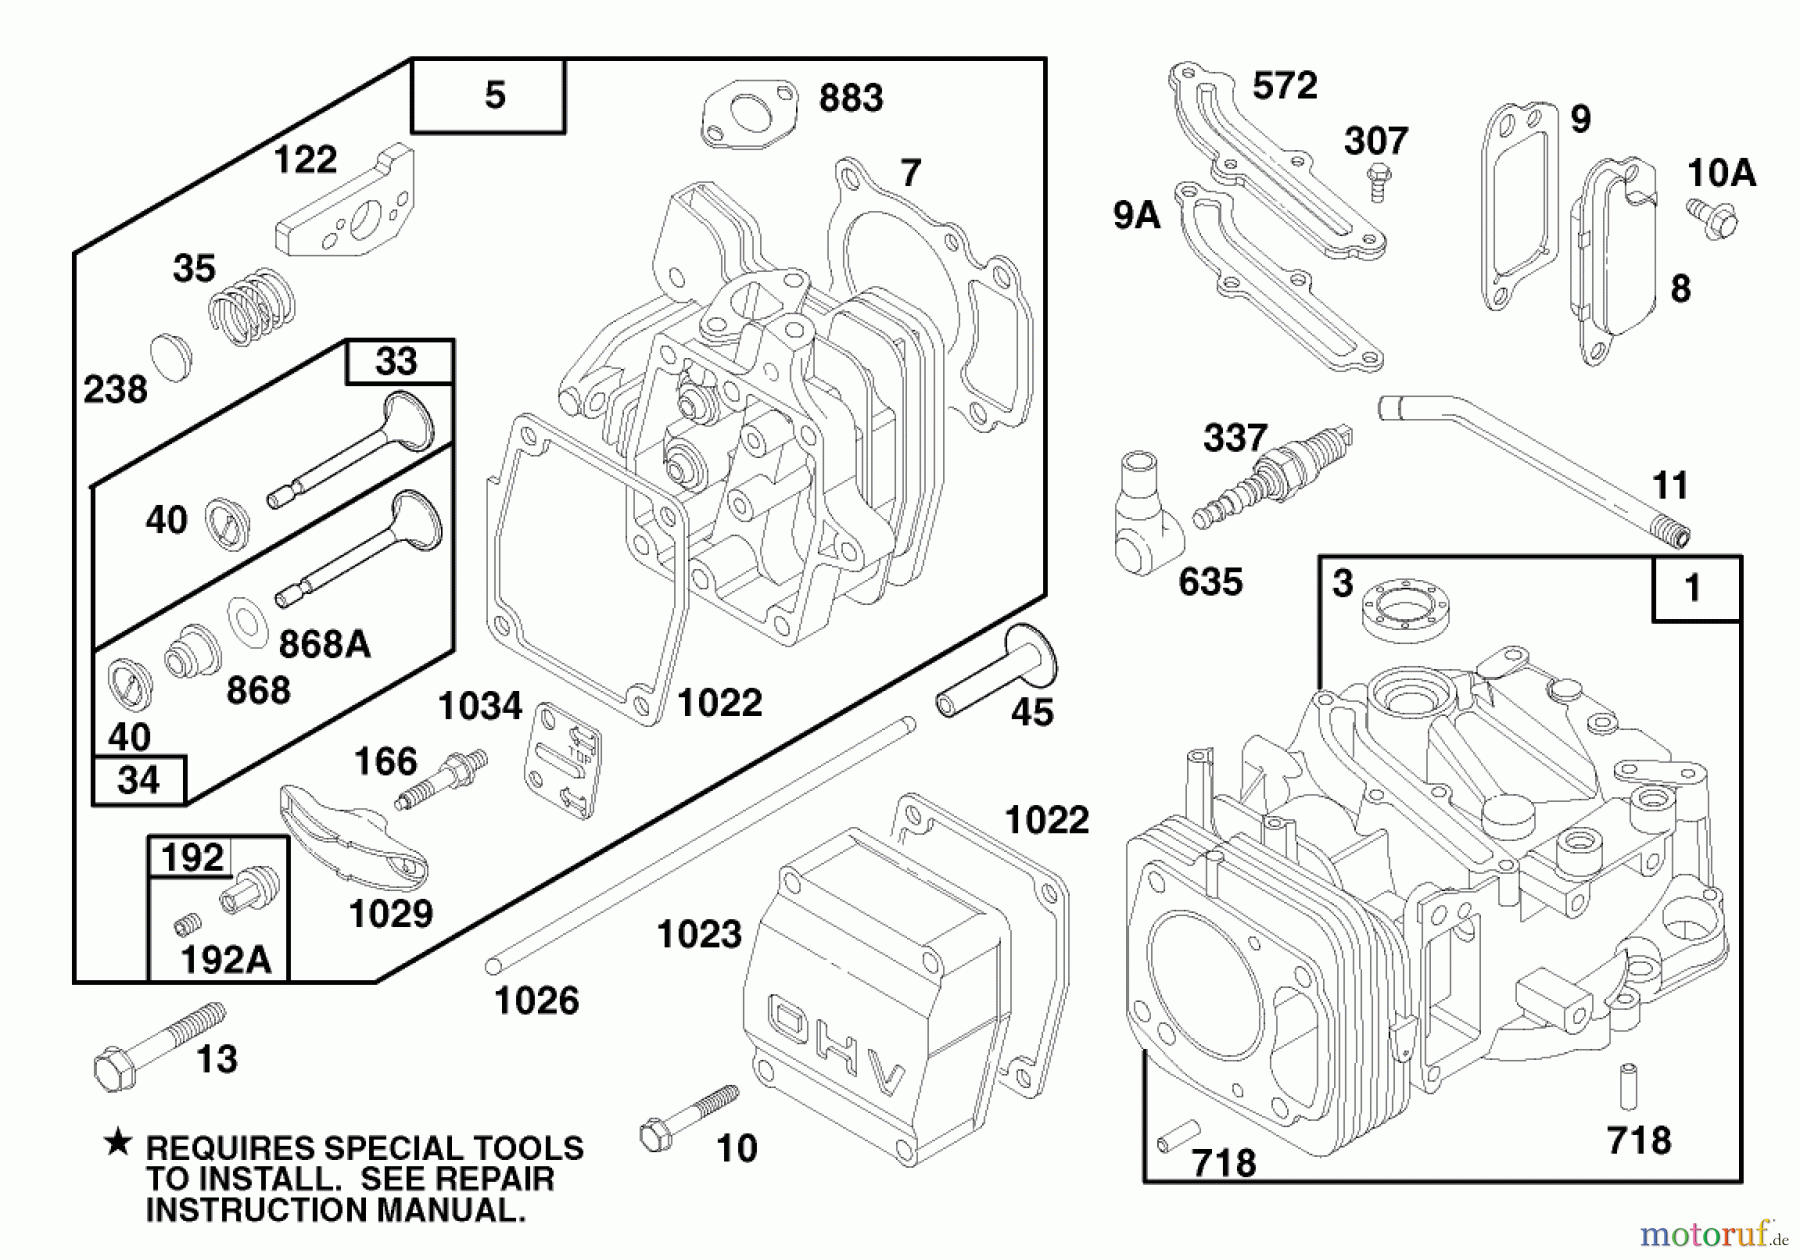  Toro Neu Mowers, Walk-Behind Seite 1 20475 - Toro Lawnmower, 1996 (6900001-6999999) ENGINE GTS 150 (MODEL NO. 20476 ONLY) #1